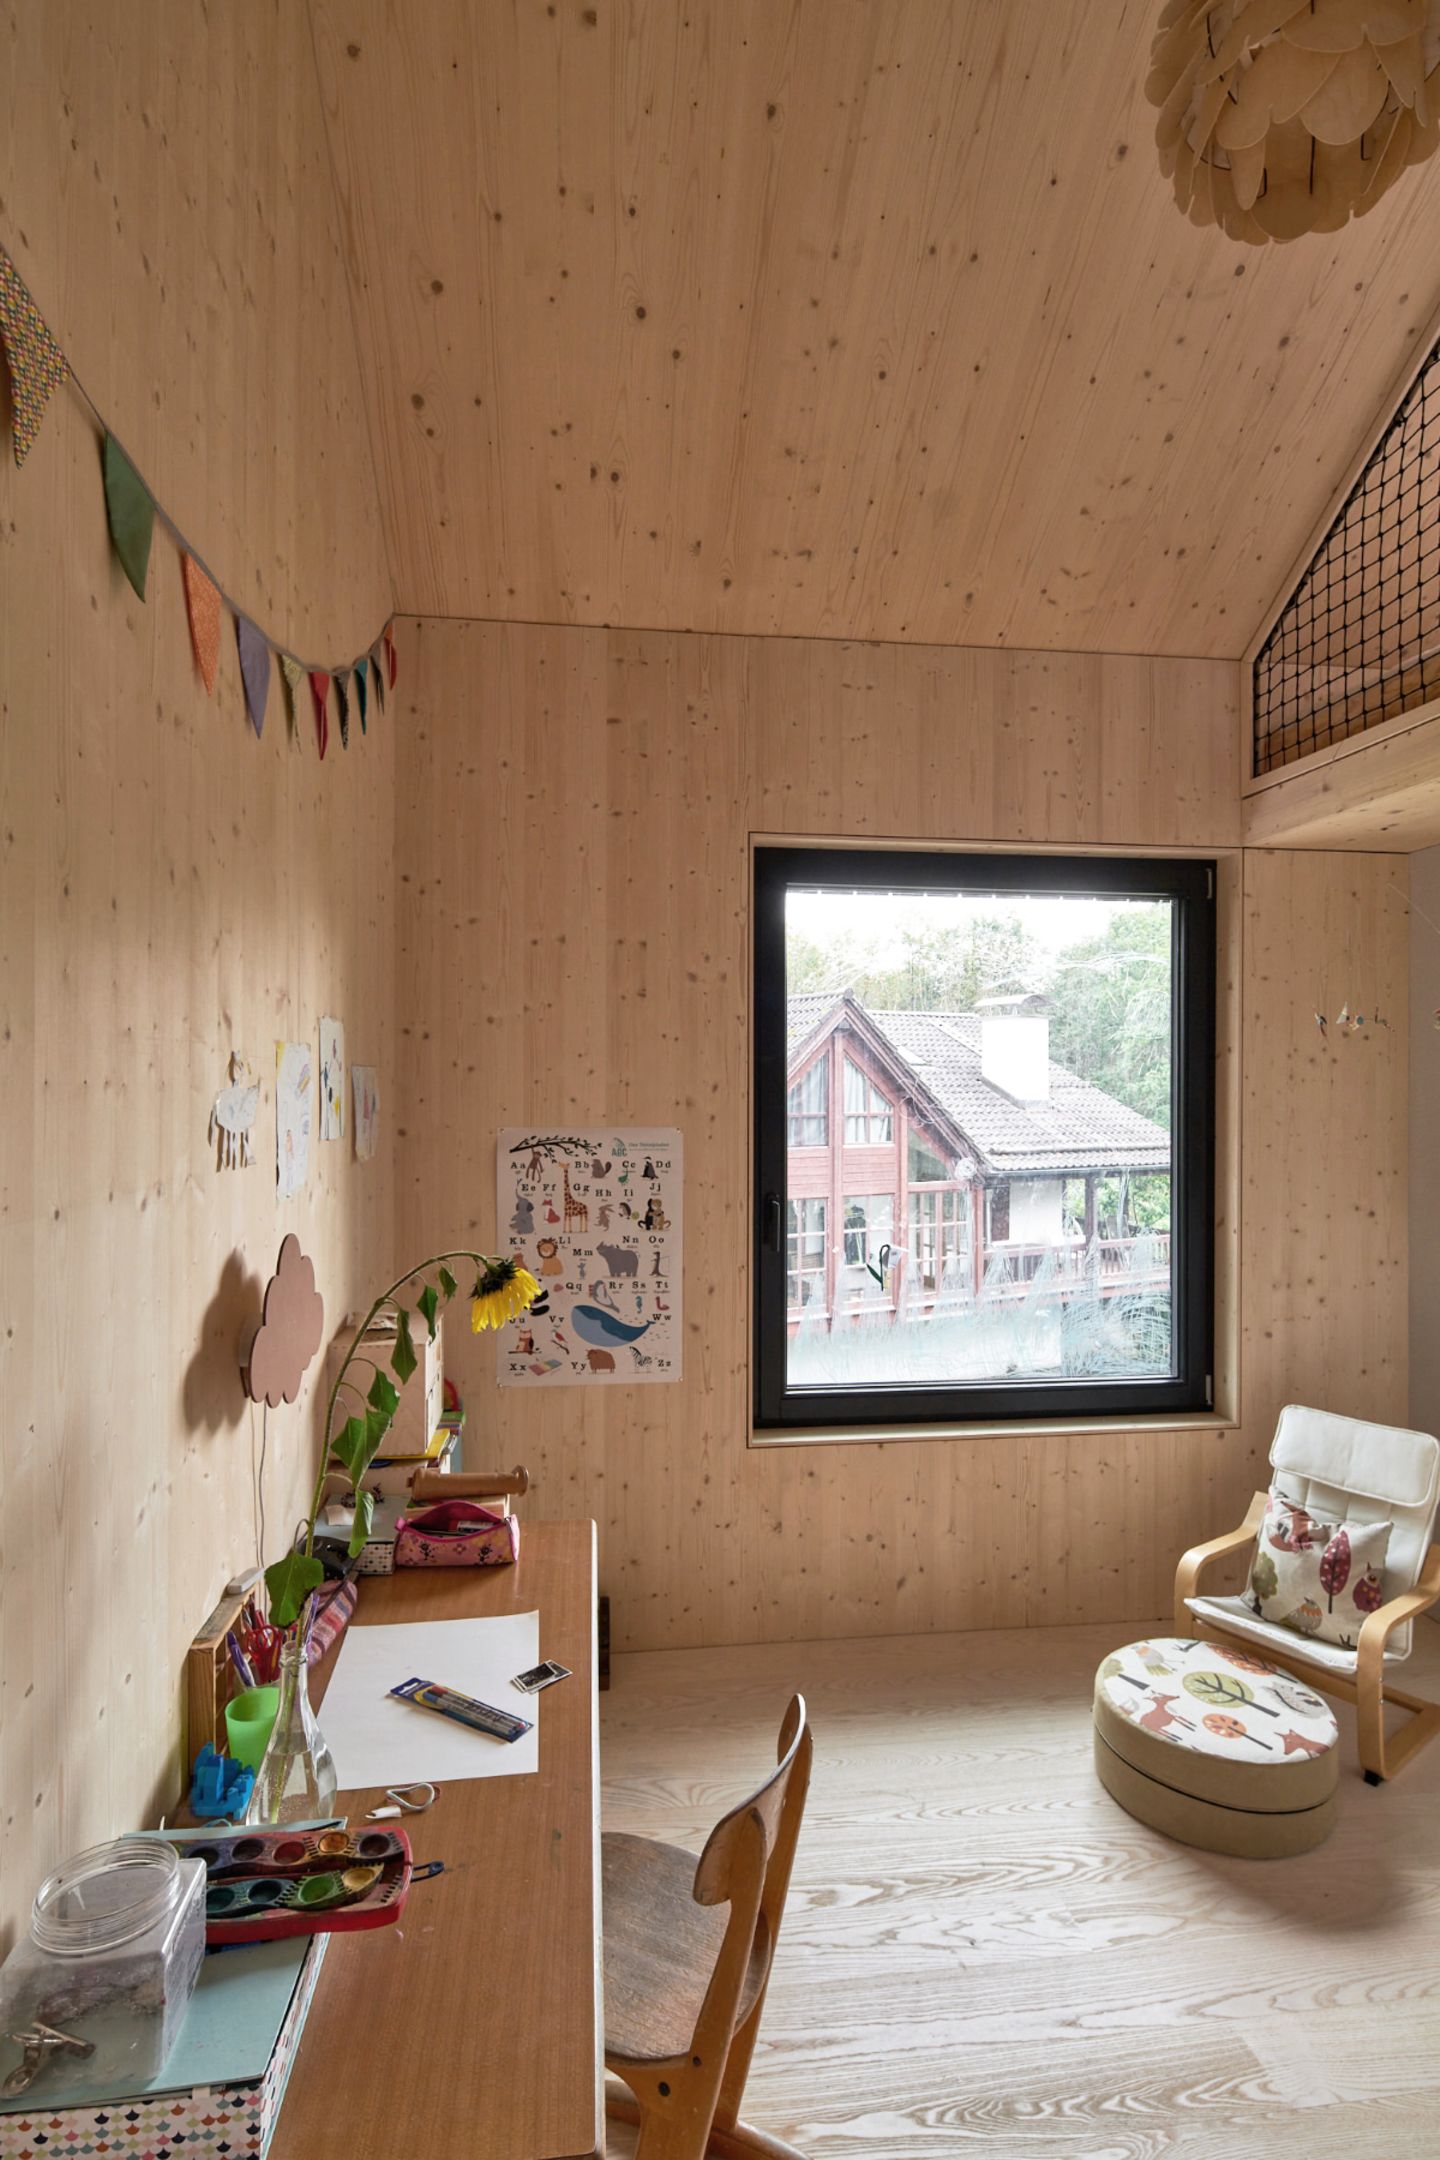 Kinderzimmer mit Schlafgalerie im Dachspitz - [SCHÖNER WOHNEN]